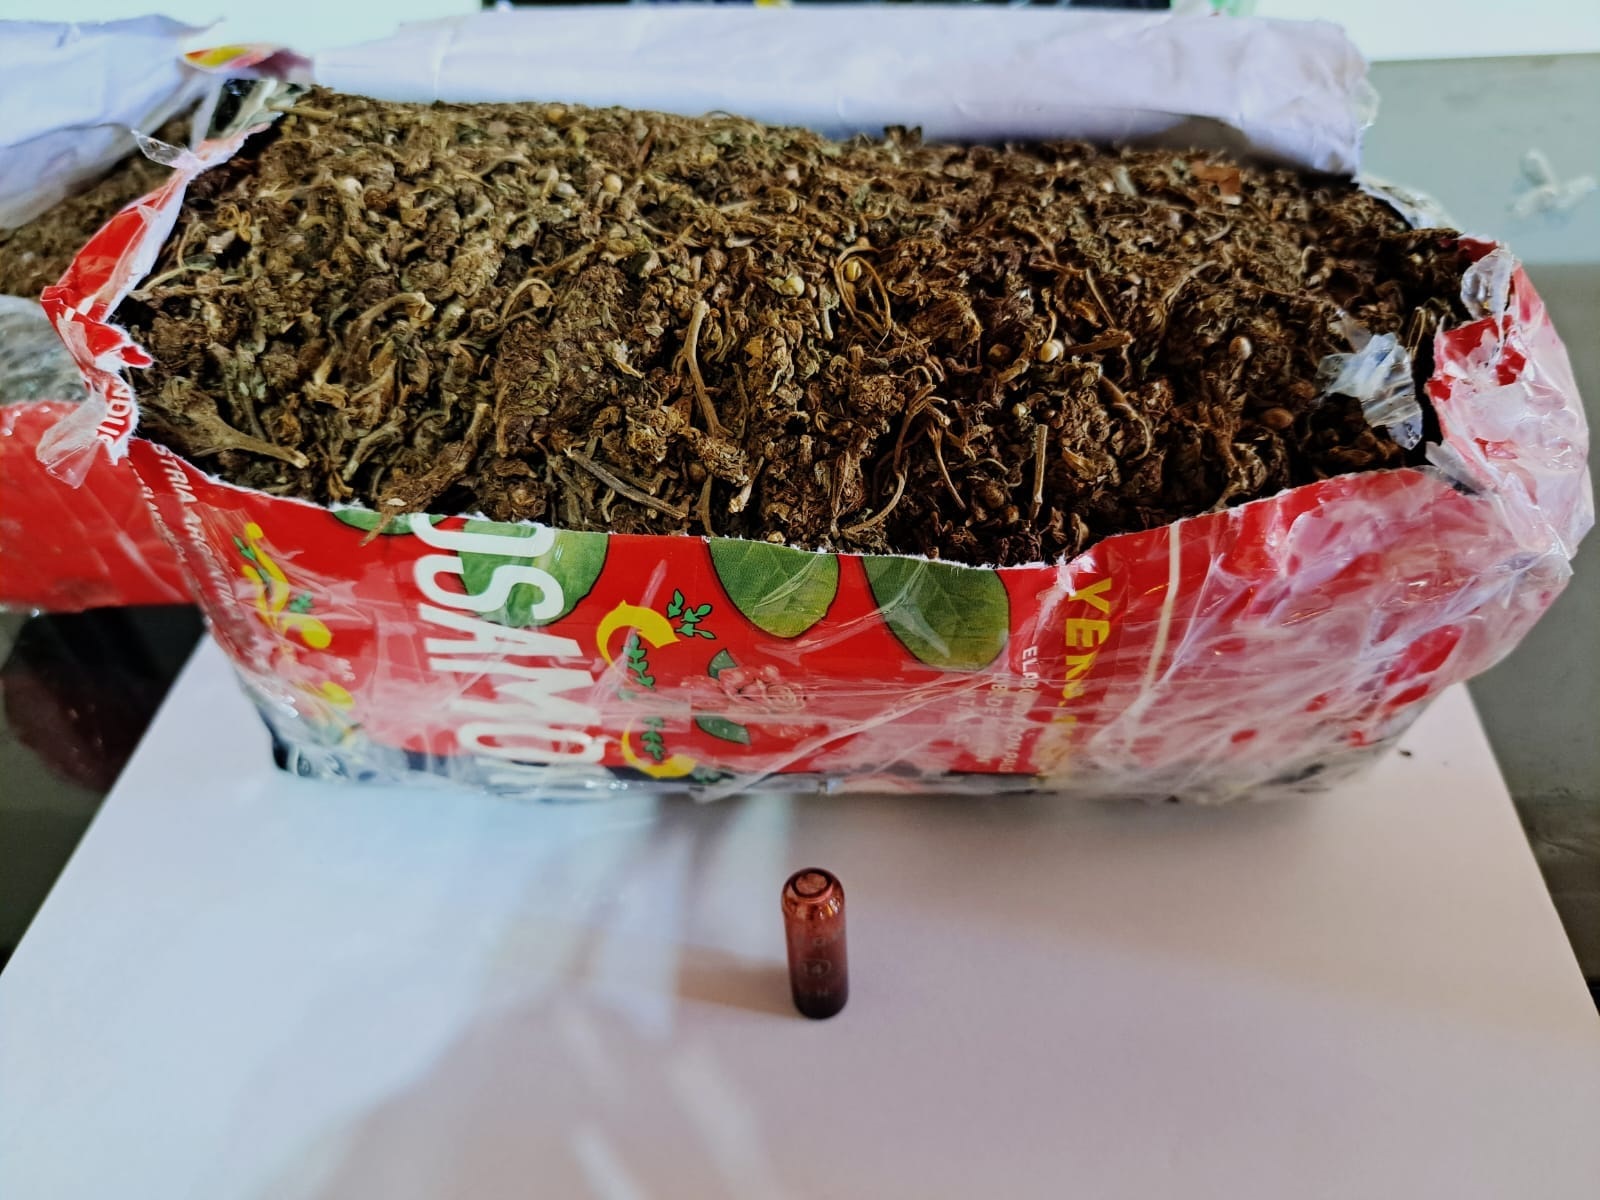 Descubren marihuana en paquetes de yerba mate y harina imagen-1